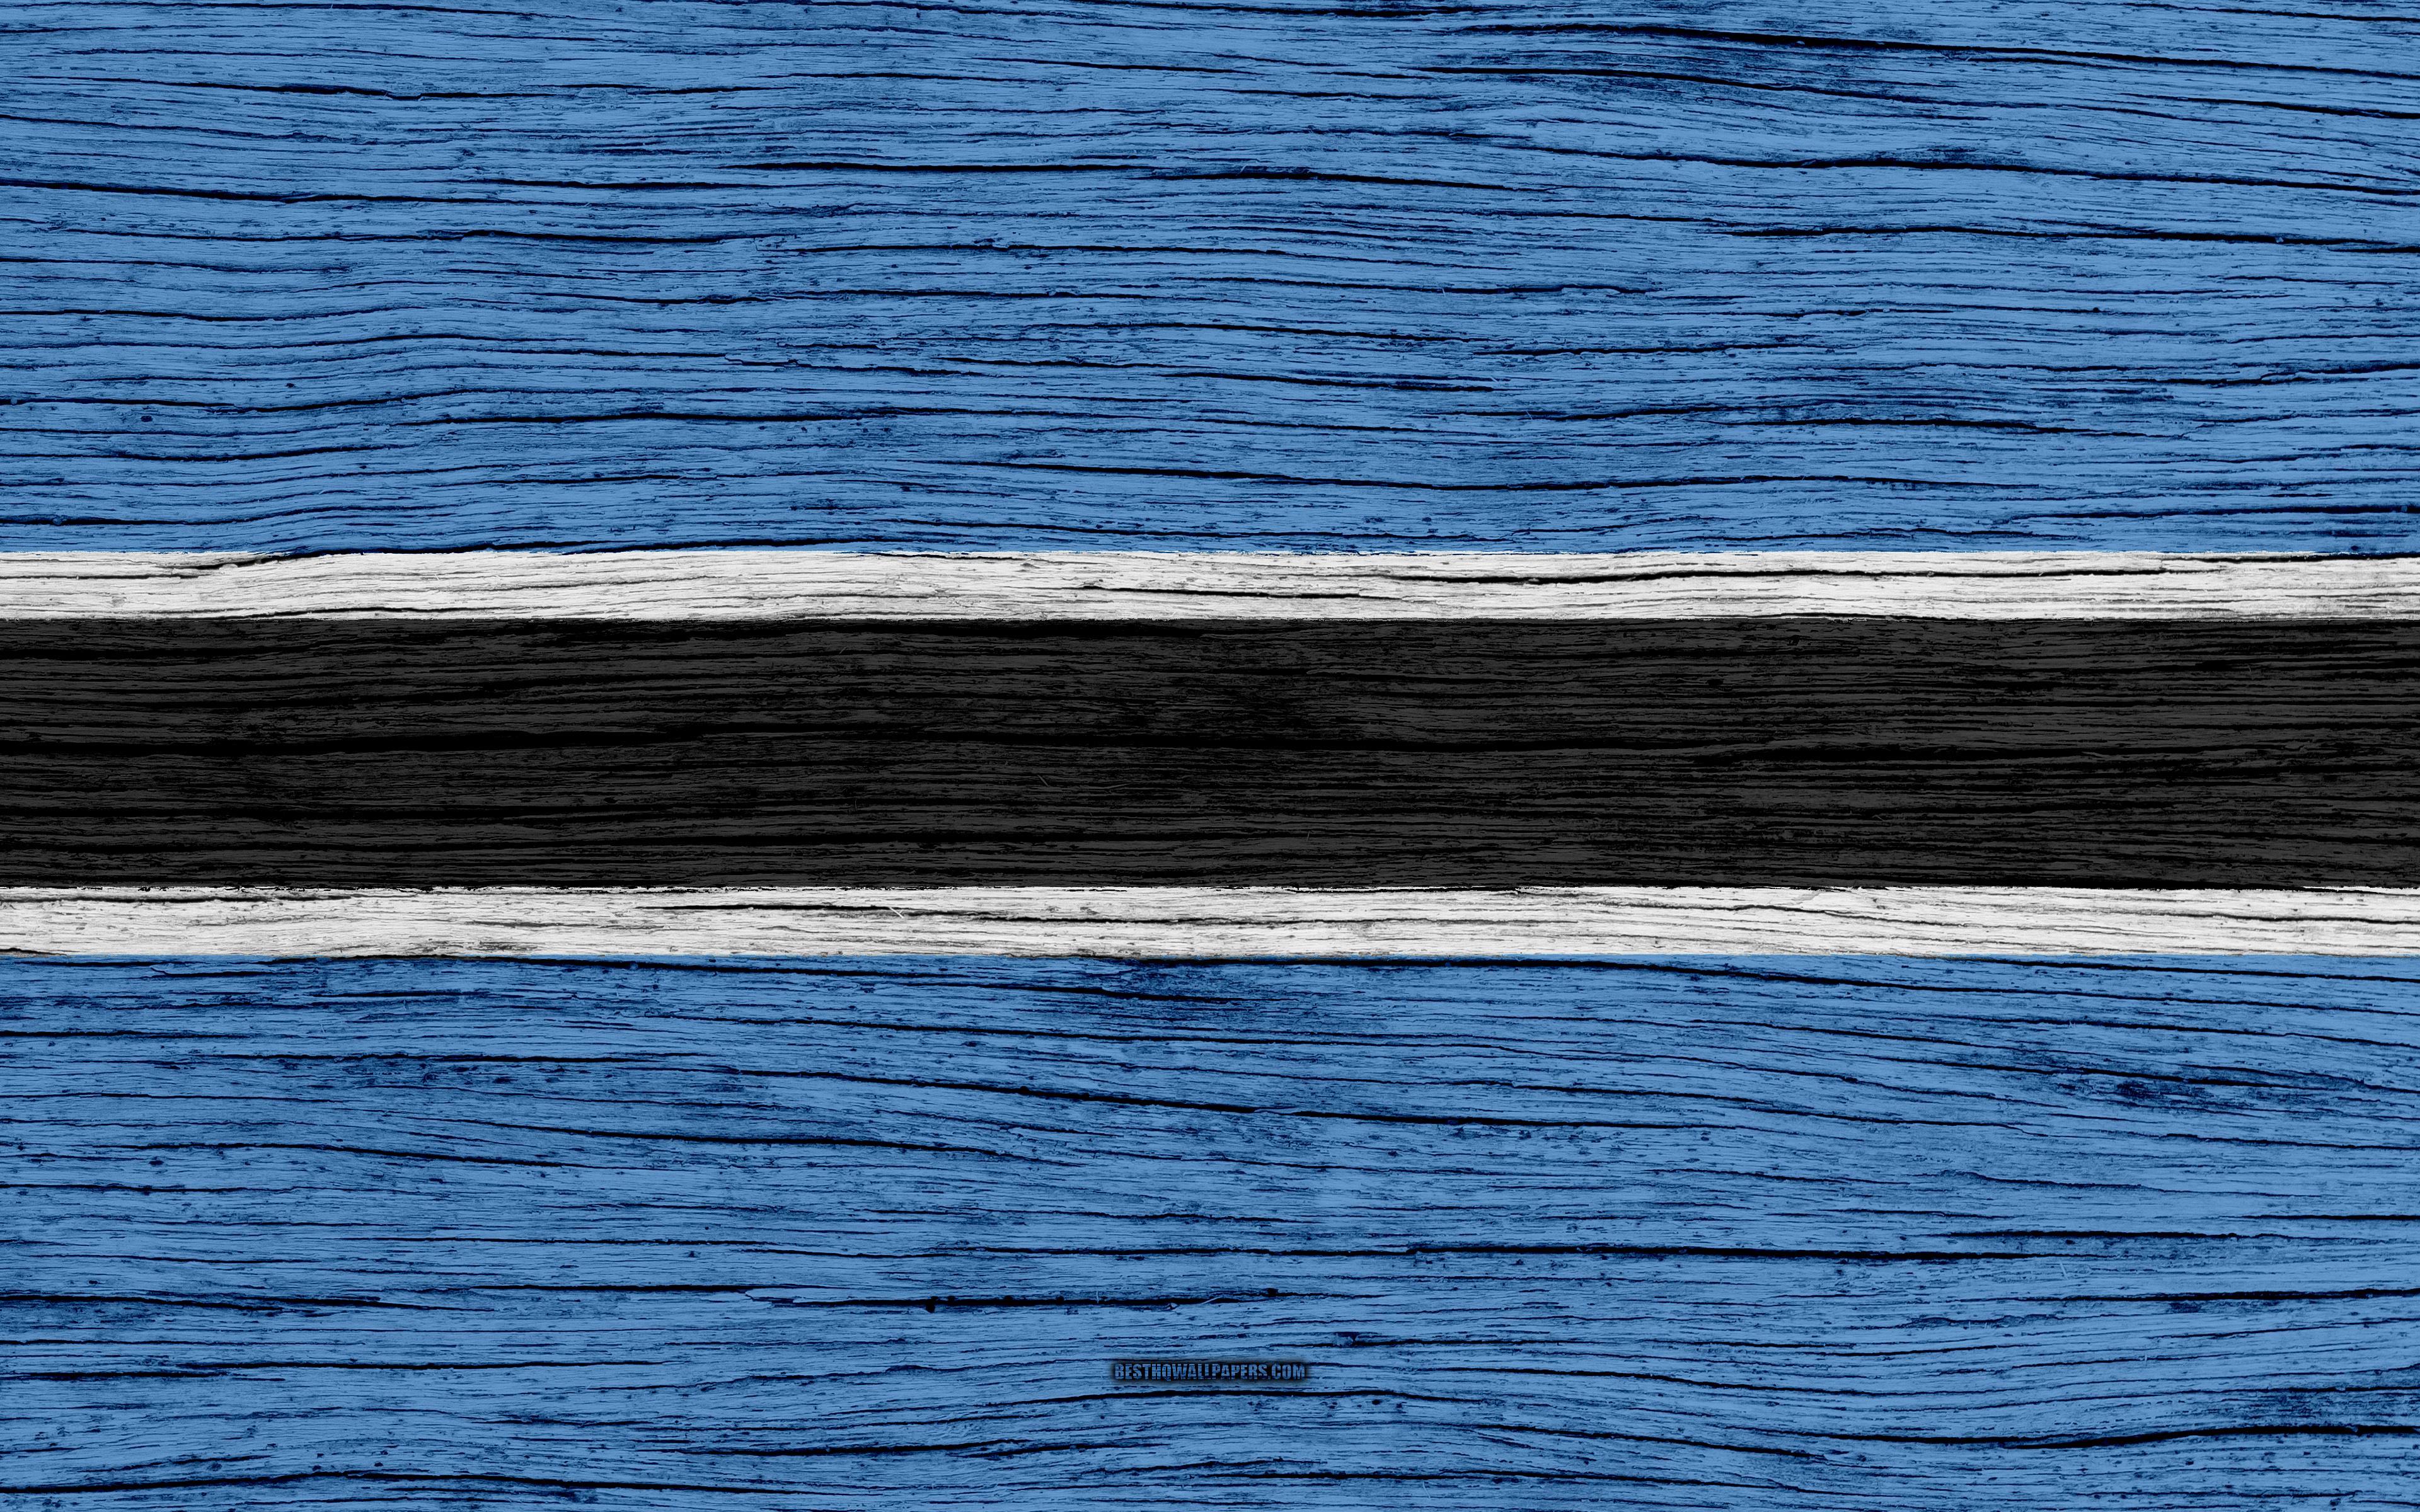 Download wallpaper Flag of Botswana, 4k, Africa, wooden texture